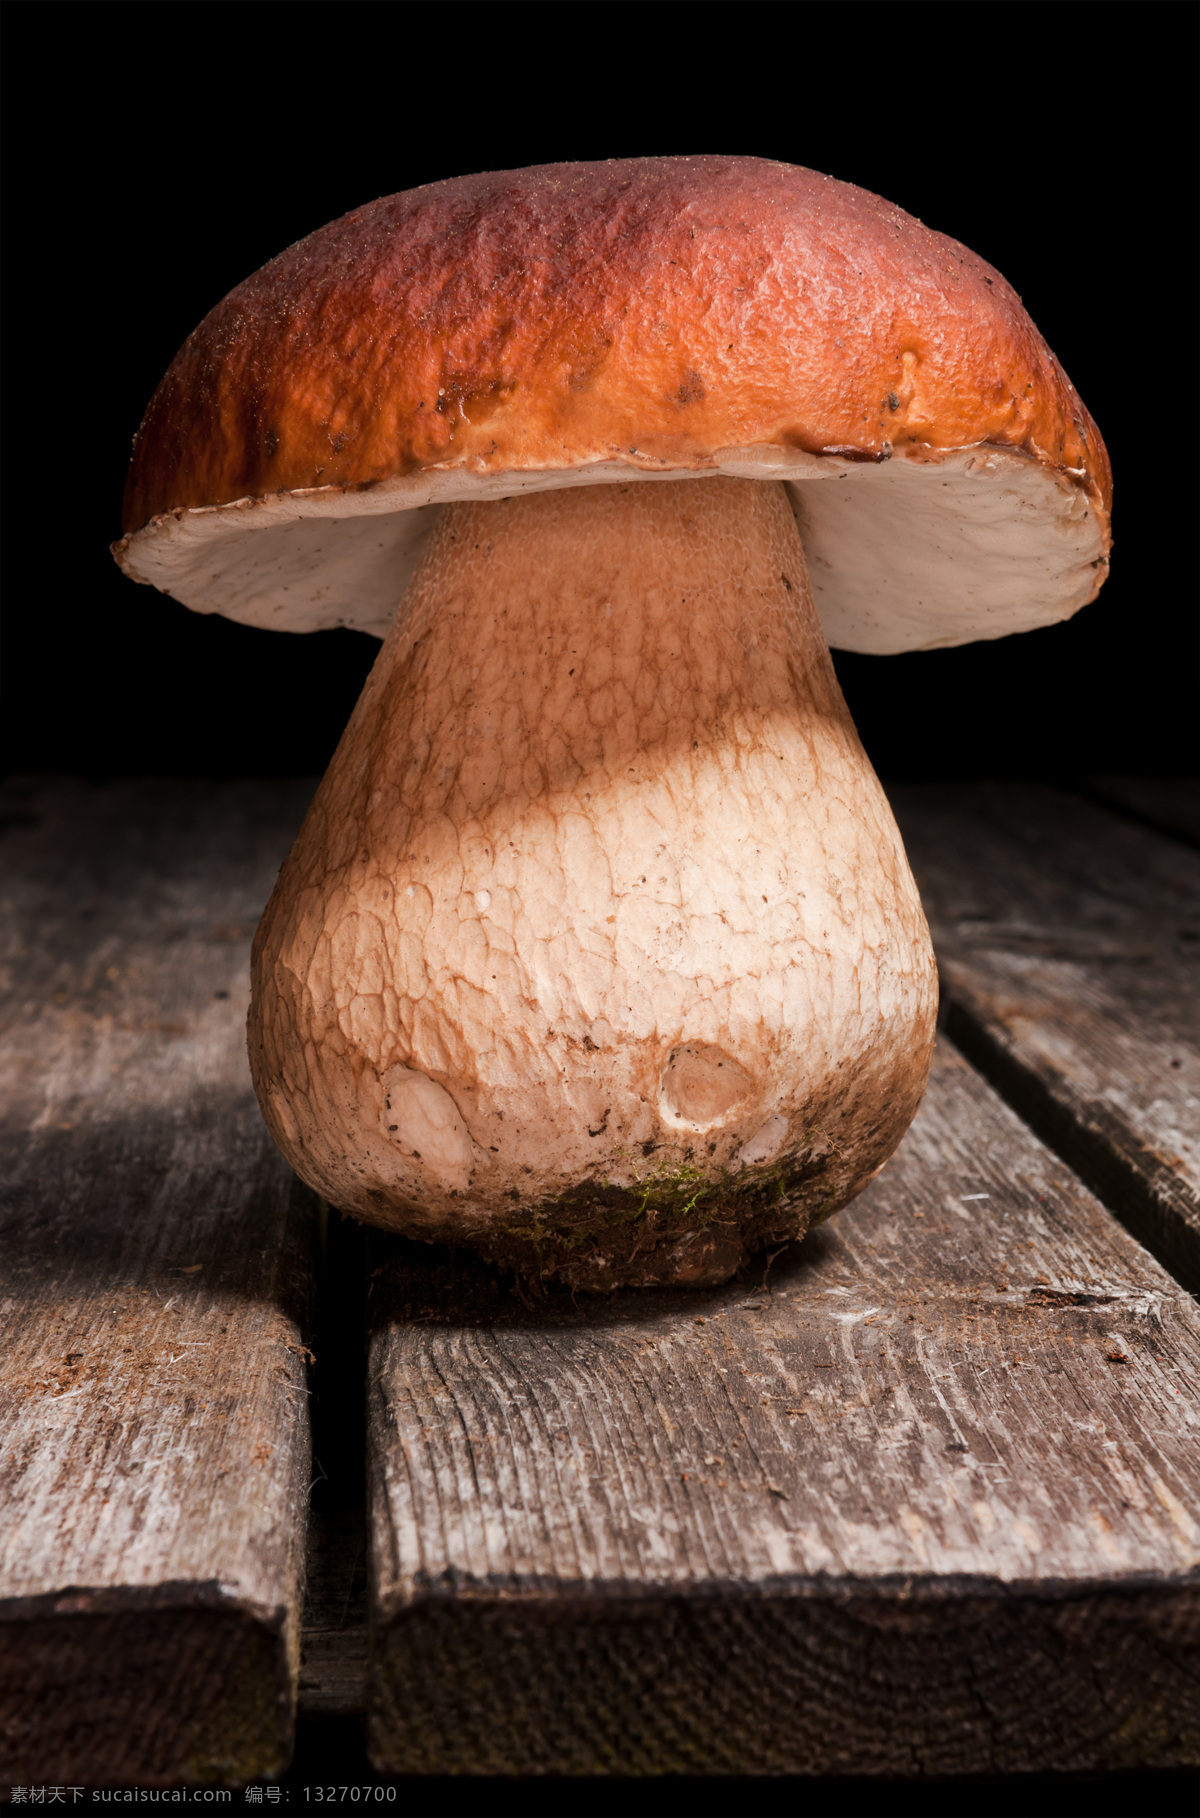 蘑菇 野蘑菇 香蘑菇 野菌菇 食用菌 菌类 菇子 菇类 蔬菜 生物世界